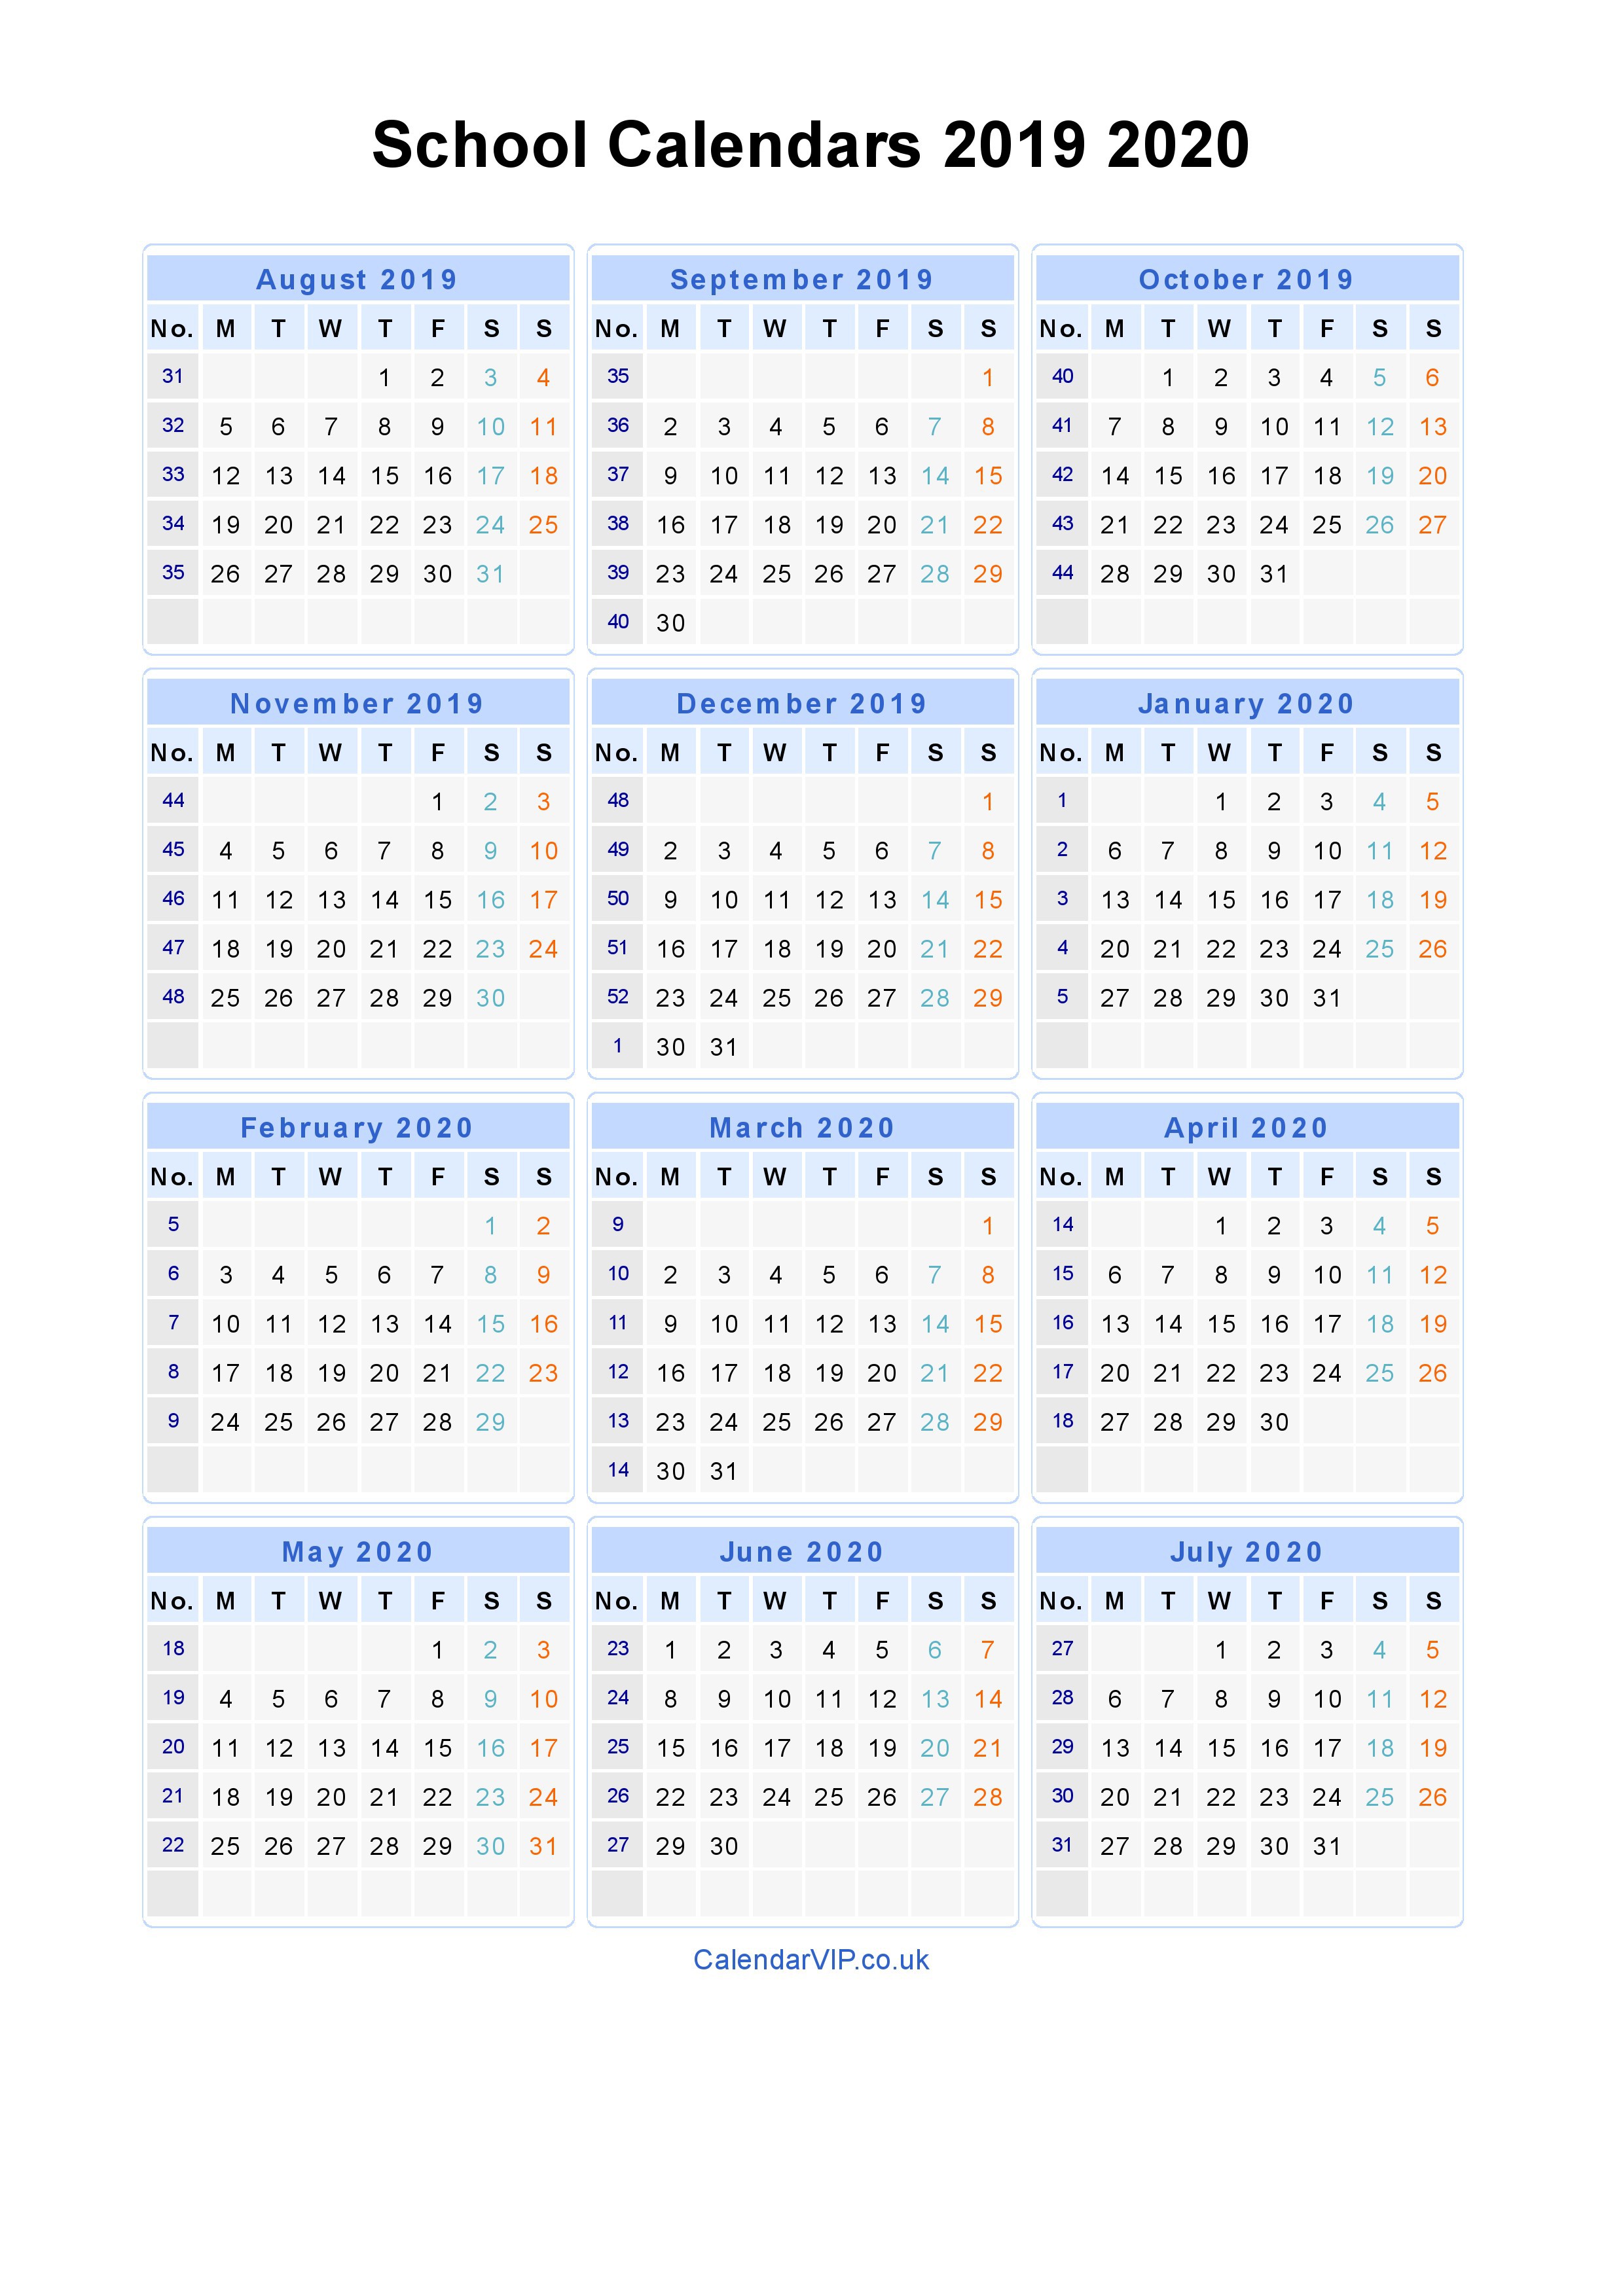 school calendars 2019 2020 calendar from august 2019 to